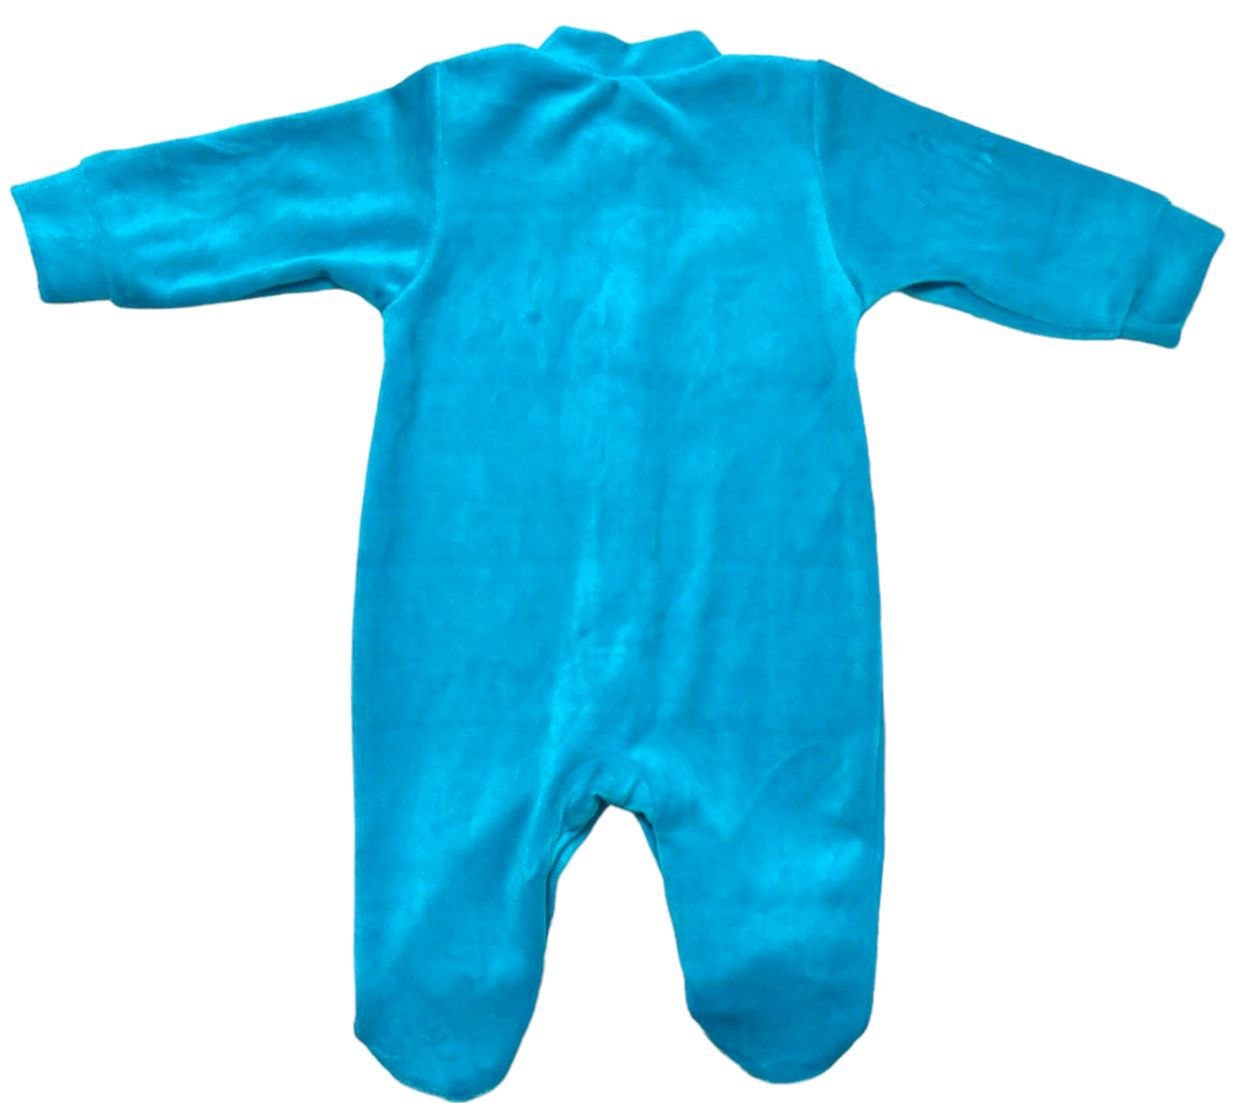 Комбінезон «ЧИЖИК» бірюзового кольору з вишивкою велюр, Бірюзовий, 9-12 місяців, 80см